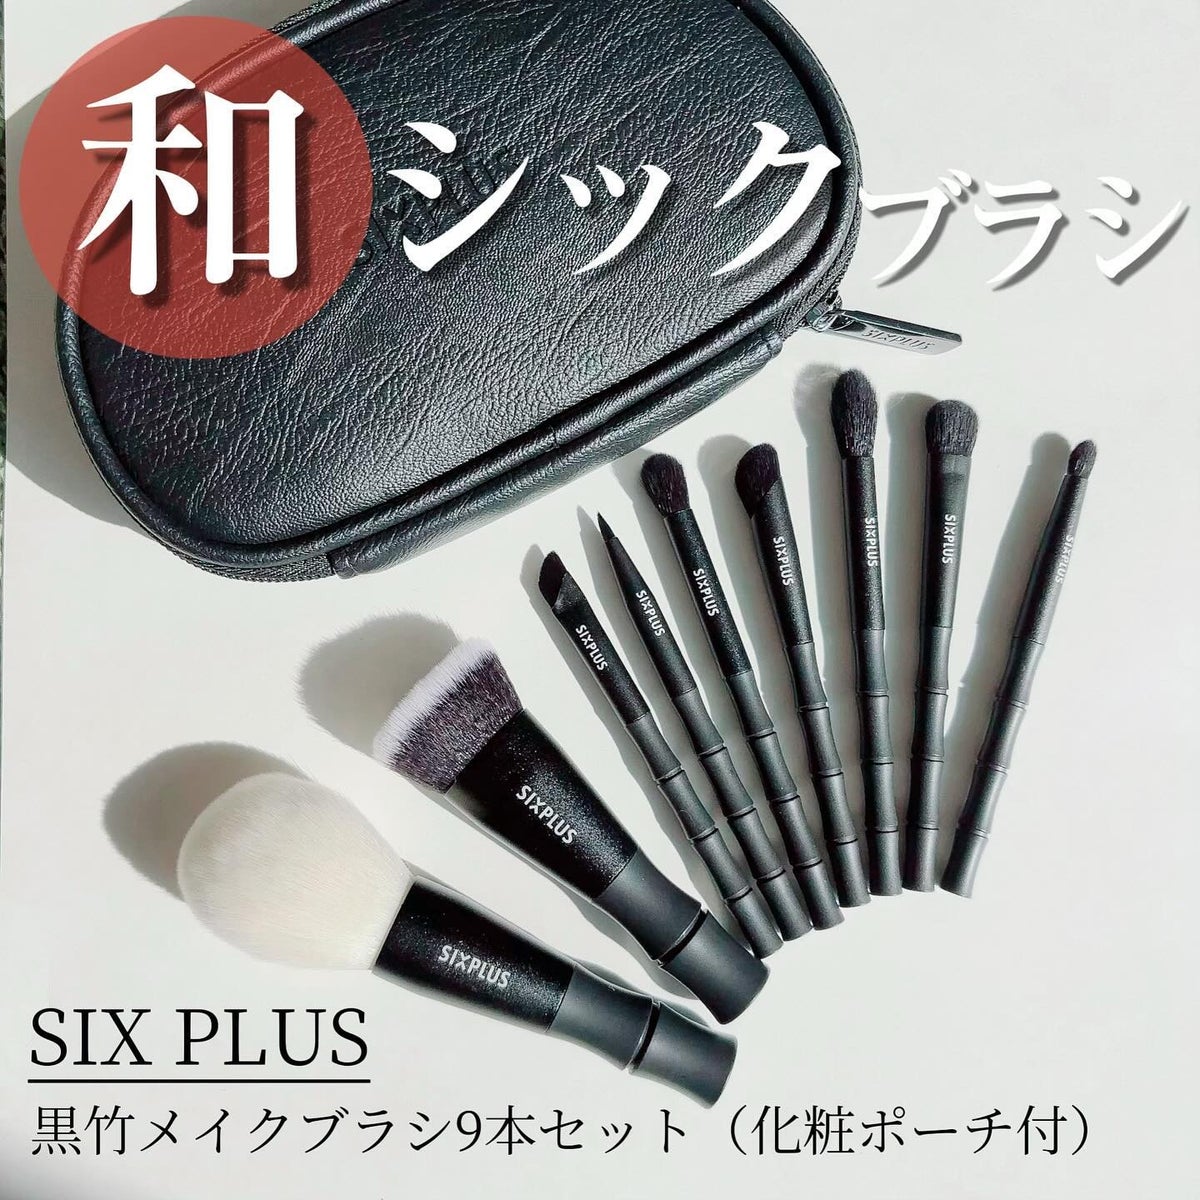 コスメ/美容SIXPLUS 黒竹メイクブラシ9本セット 人気 化粧ブラシ ファンデーションブ